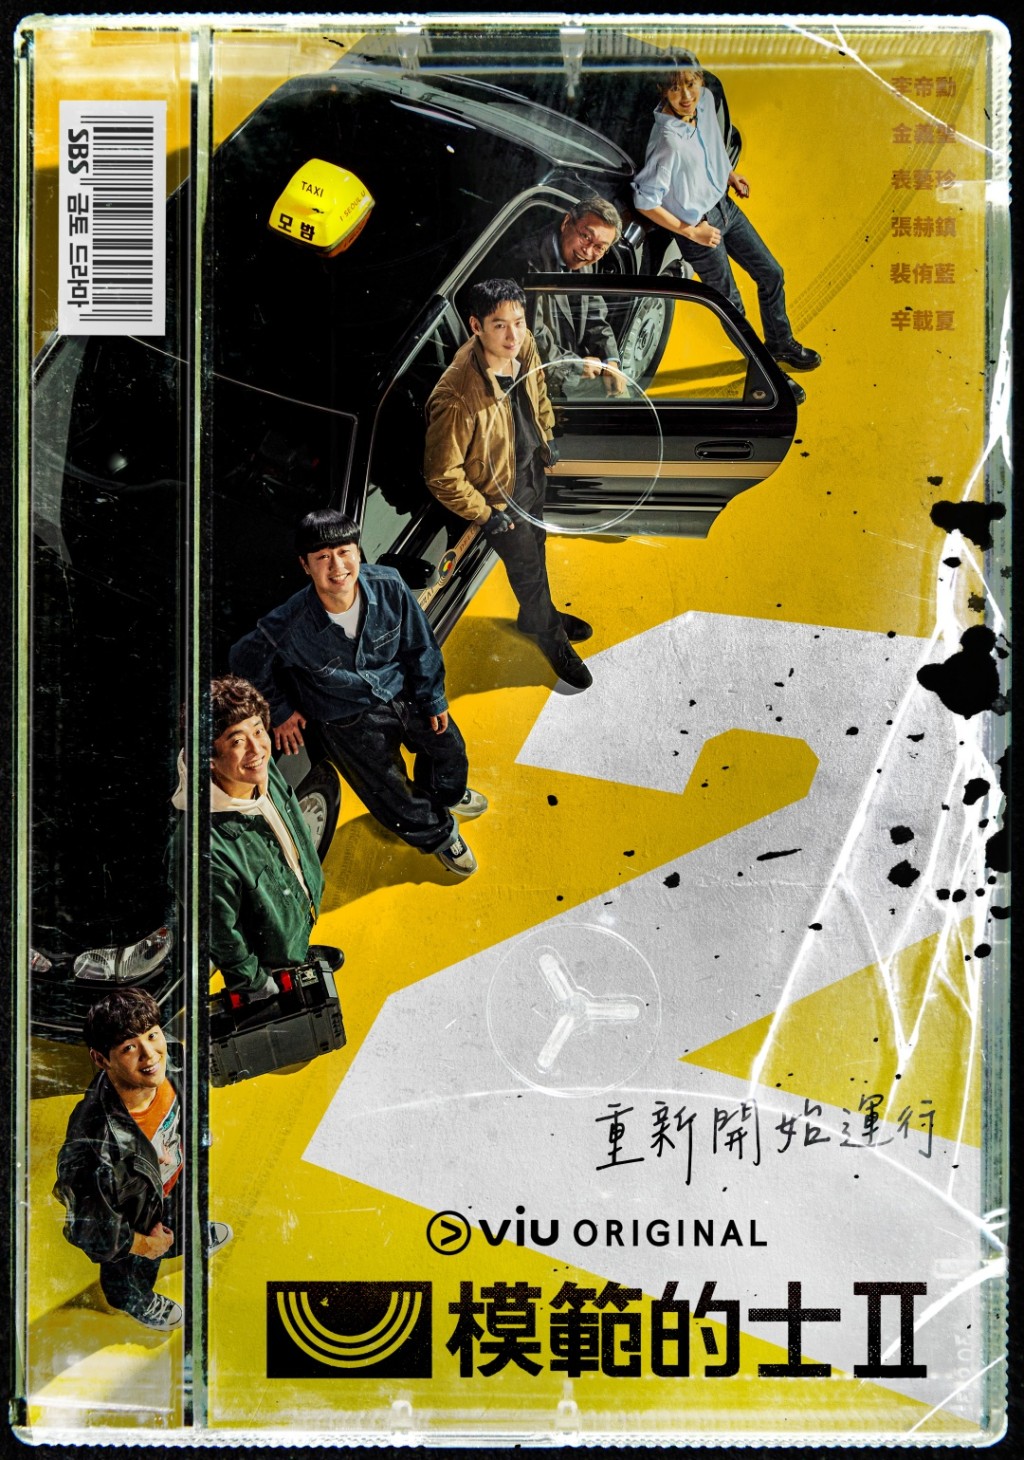 Viu Original原创韩剧《模范的士2》逢星期五、六晚上10时10分在「黄Viu」上架，香港观众可以免费紧贴进度。